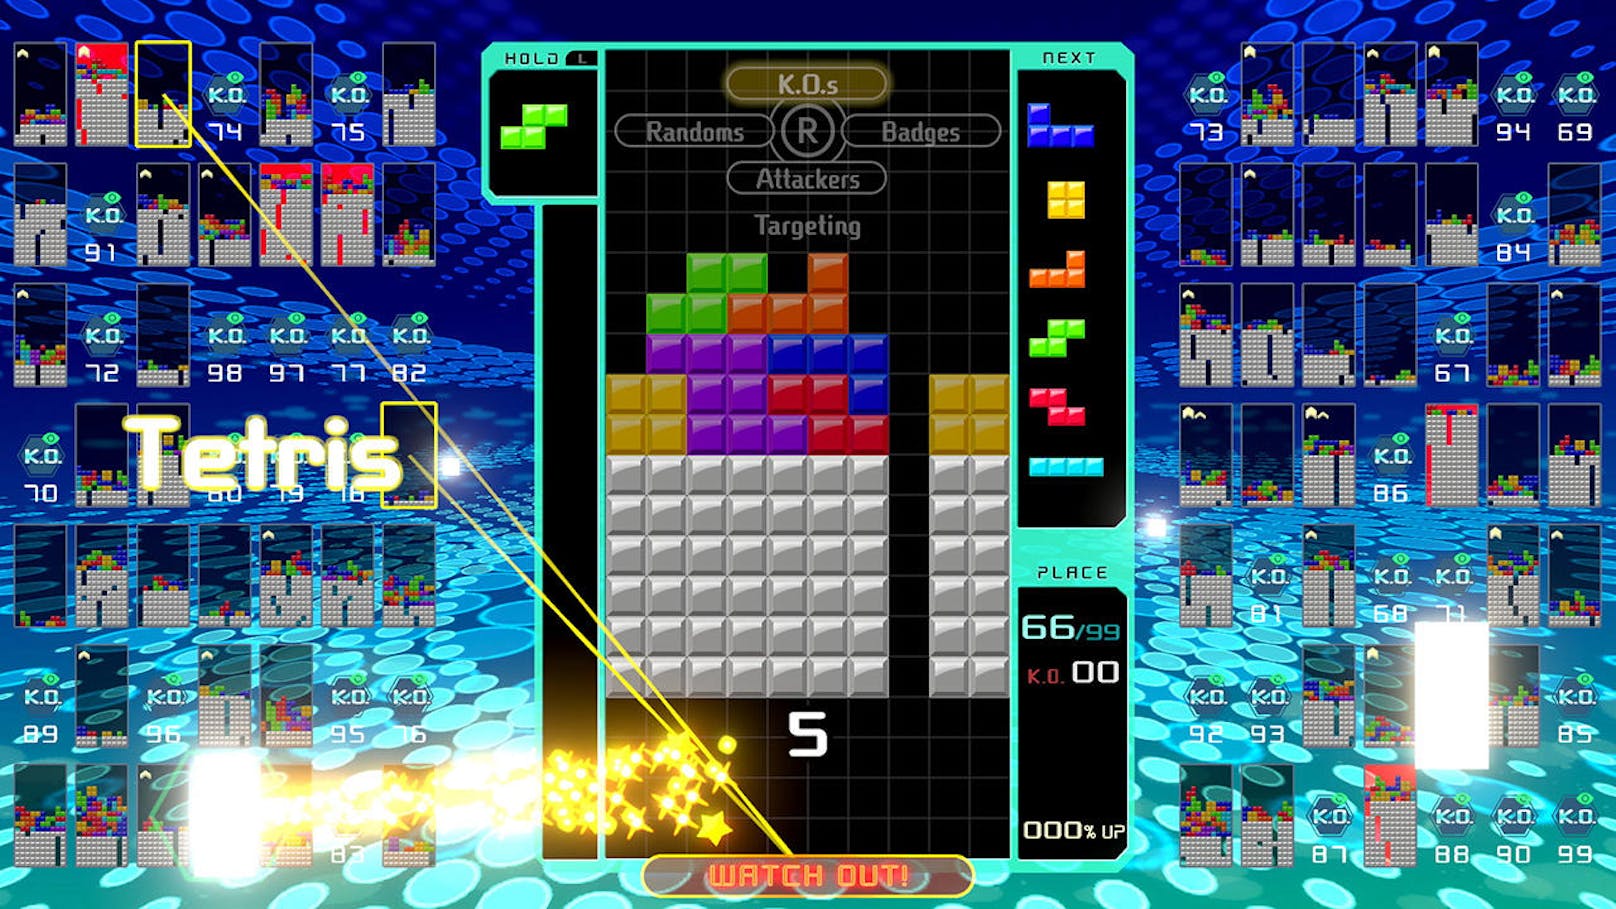 Der Tetris 99 Grand Prix geht in die zweite Runde und alle dürfen dabei sein. Unabhängig von Alter, Können und Erfahrung sind alle Nintendo Switch-Fans eingeladen, das Spiel zu starten und an dem Online-Wettbewerb teilzunehmen, vom 12. April ab 15 Uhr bis zum 15. April, 8.59 Uhr. Dieses zweite Turnier unterscheidet sich in einem wichtigen Punkt vom ersten, das Anfang März bereits für Spannung gesorgt hat: Man muss nicht unbedingt den ersten Platz erreichen, um Punkte zu sammeln. Auch alle, die in Einzelmatches nicht gewinnen, aber immer auf einem der vorderen Plätze landen, können am Ende in der Gesamtwertung ganz oben stehen. <a href="https://www.youtube.com/watch?v=DVZRvp7AH8k&feature=youtu.be">Alle Details zum Wettkampf hier.</a>